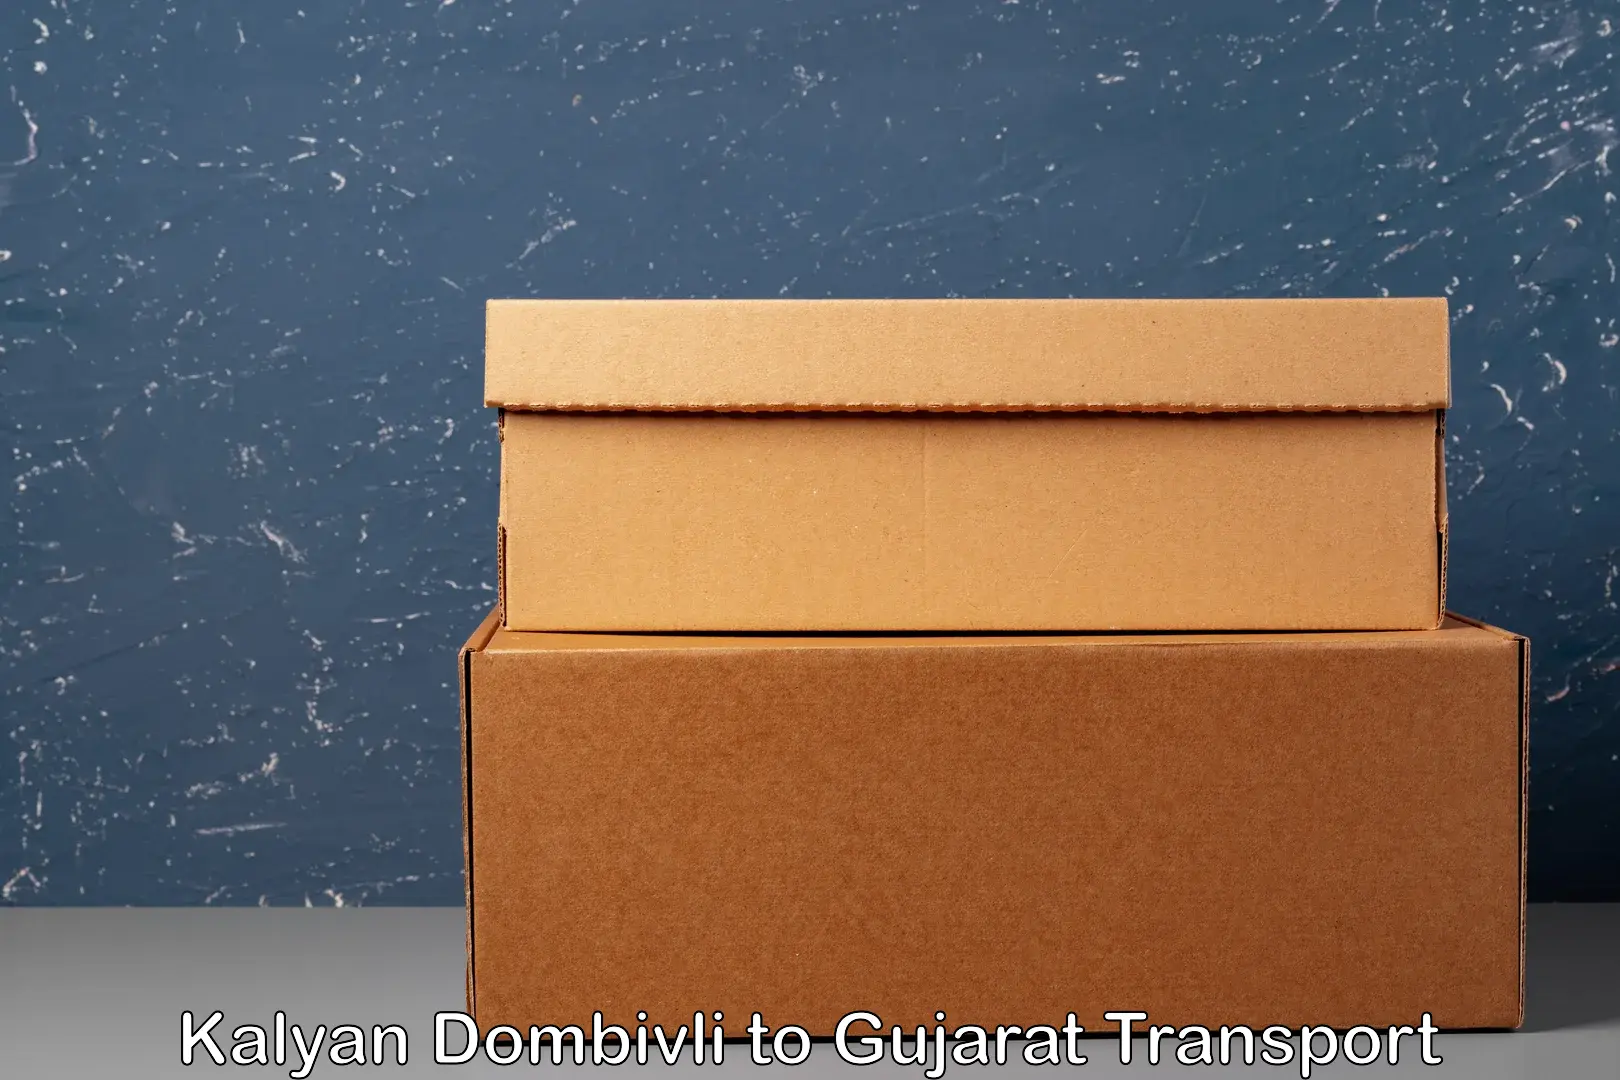 Online transport booking Kalyan Dombivli to Gujarat